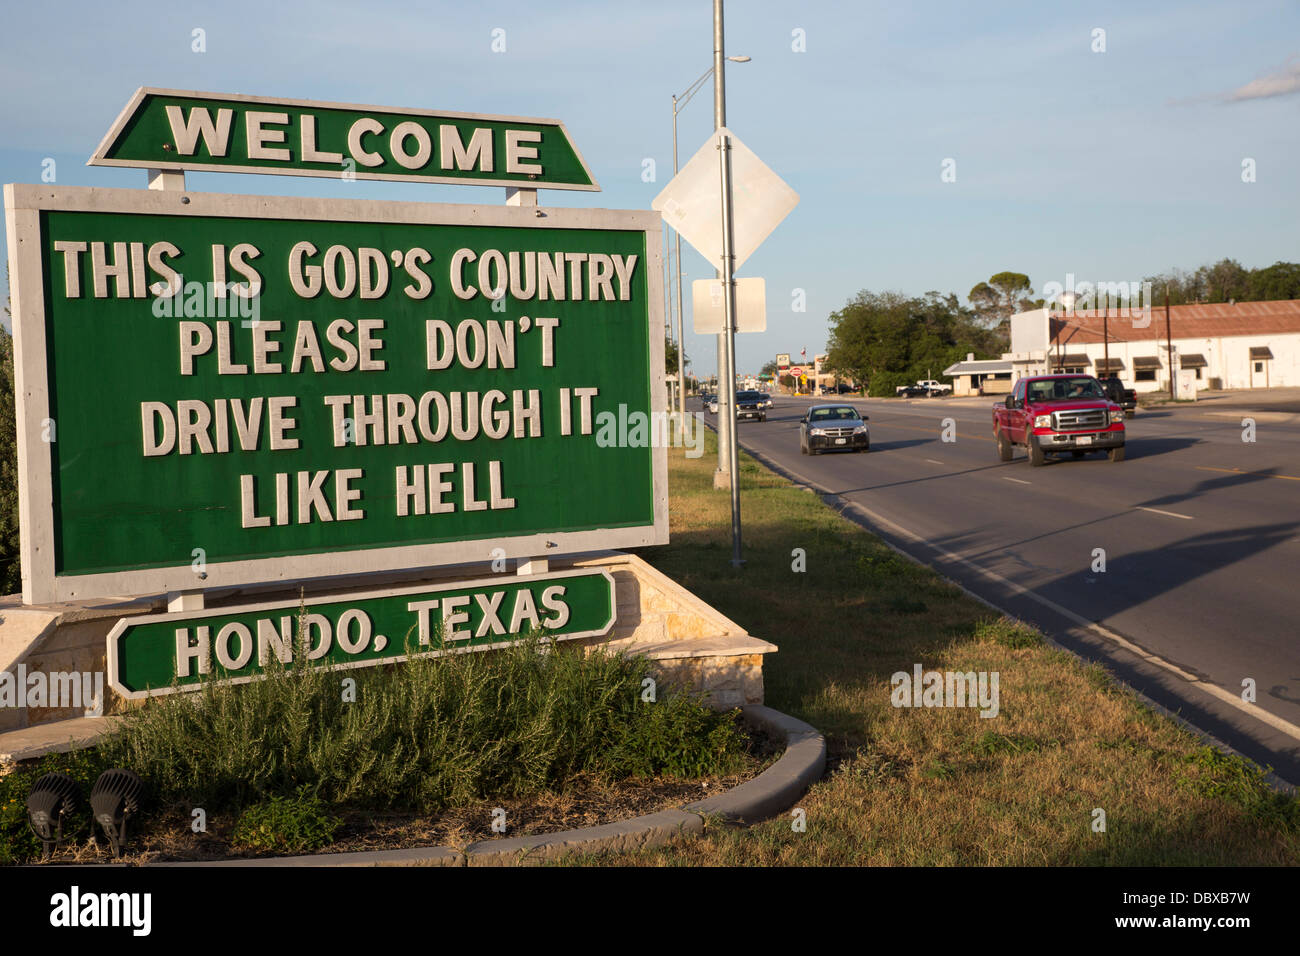 Hondo, Texas - un panneau le long de l'autoroute 90 demande instamment aux automobilistes de conduire de façon responsable. Banque D'Images